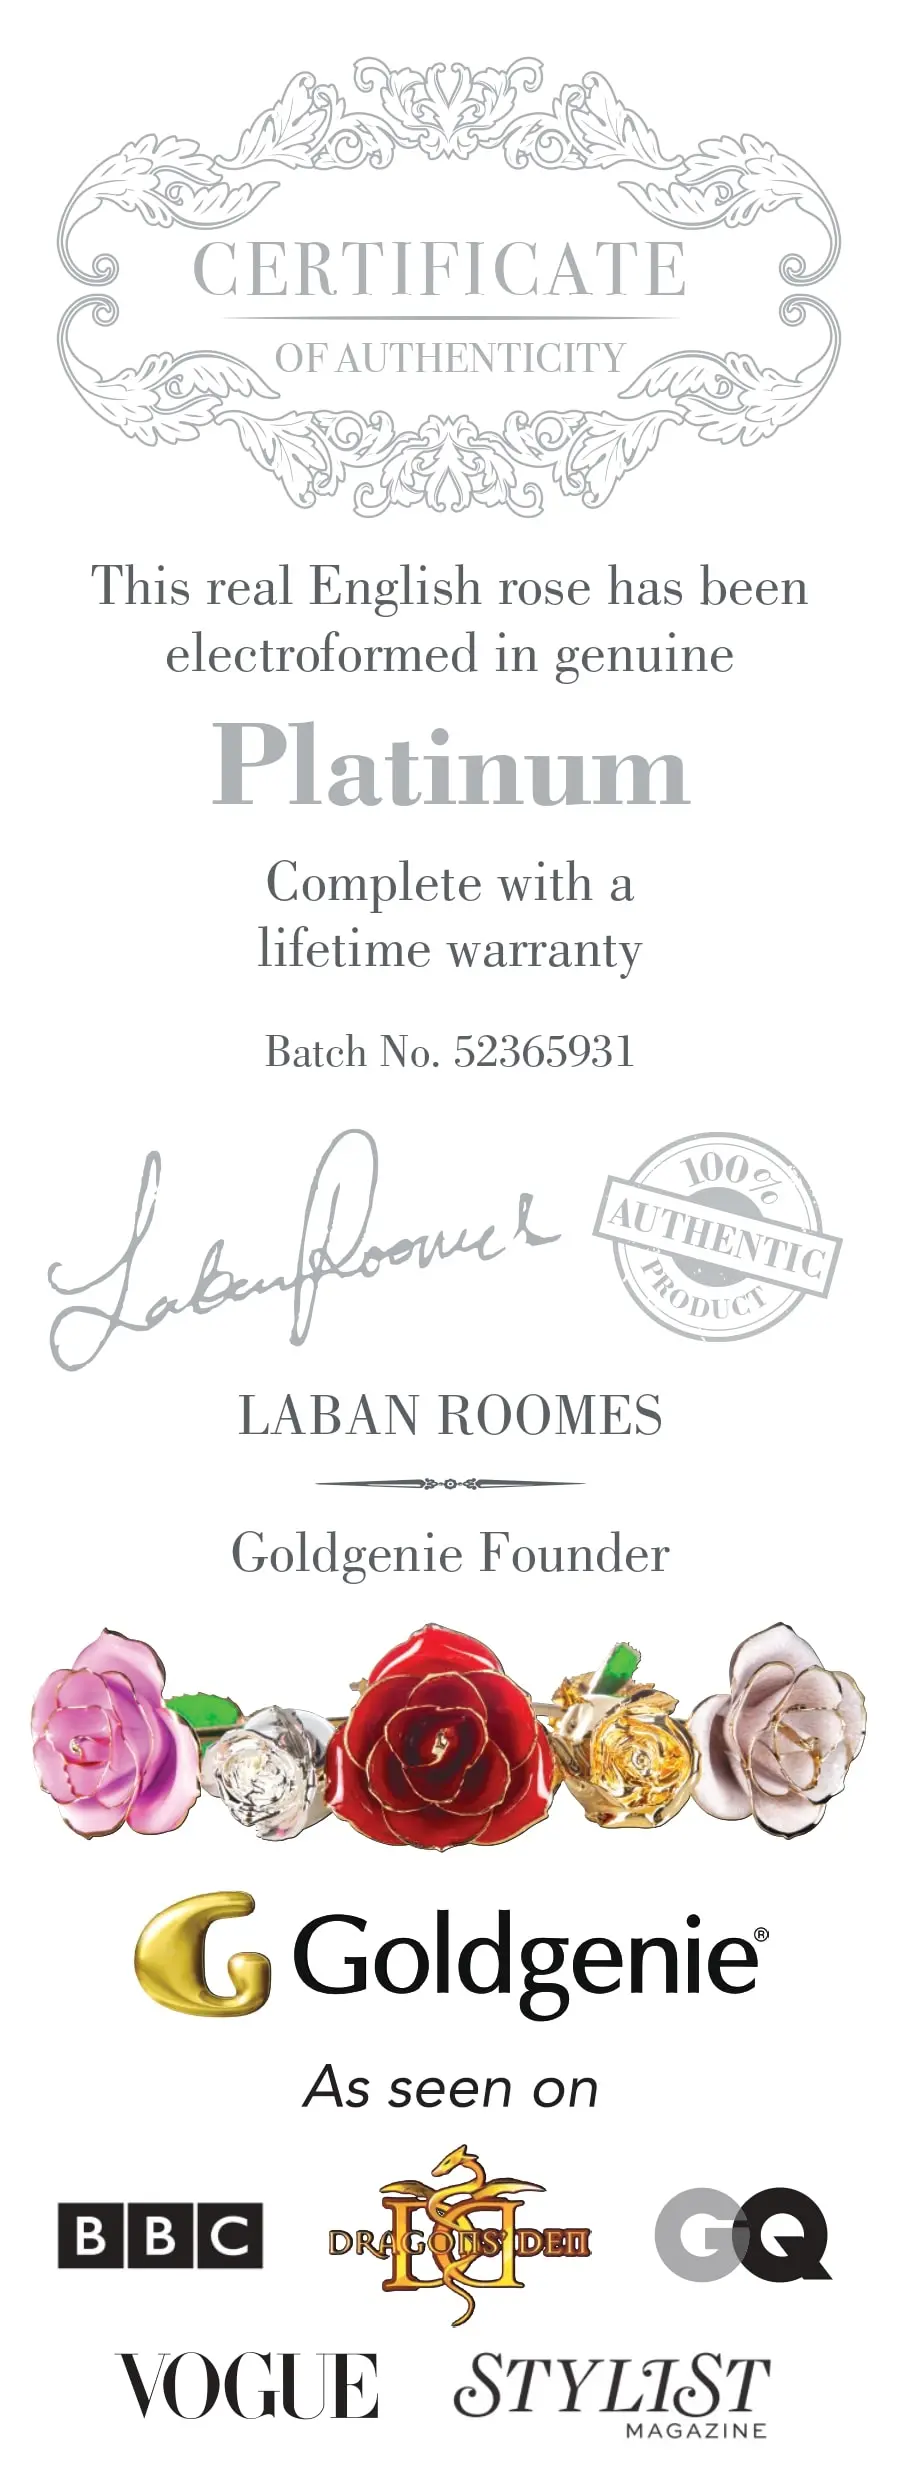 Goldgenie Platinum Certificate of Authenticity